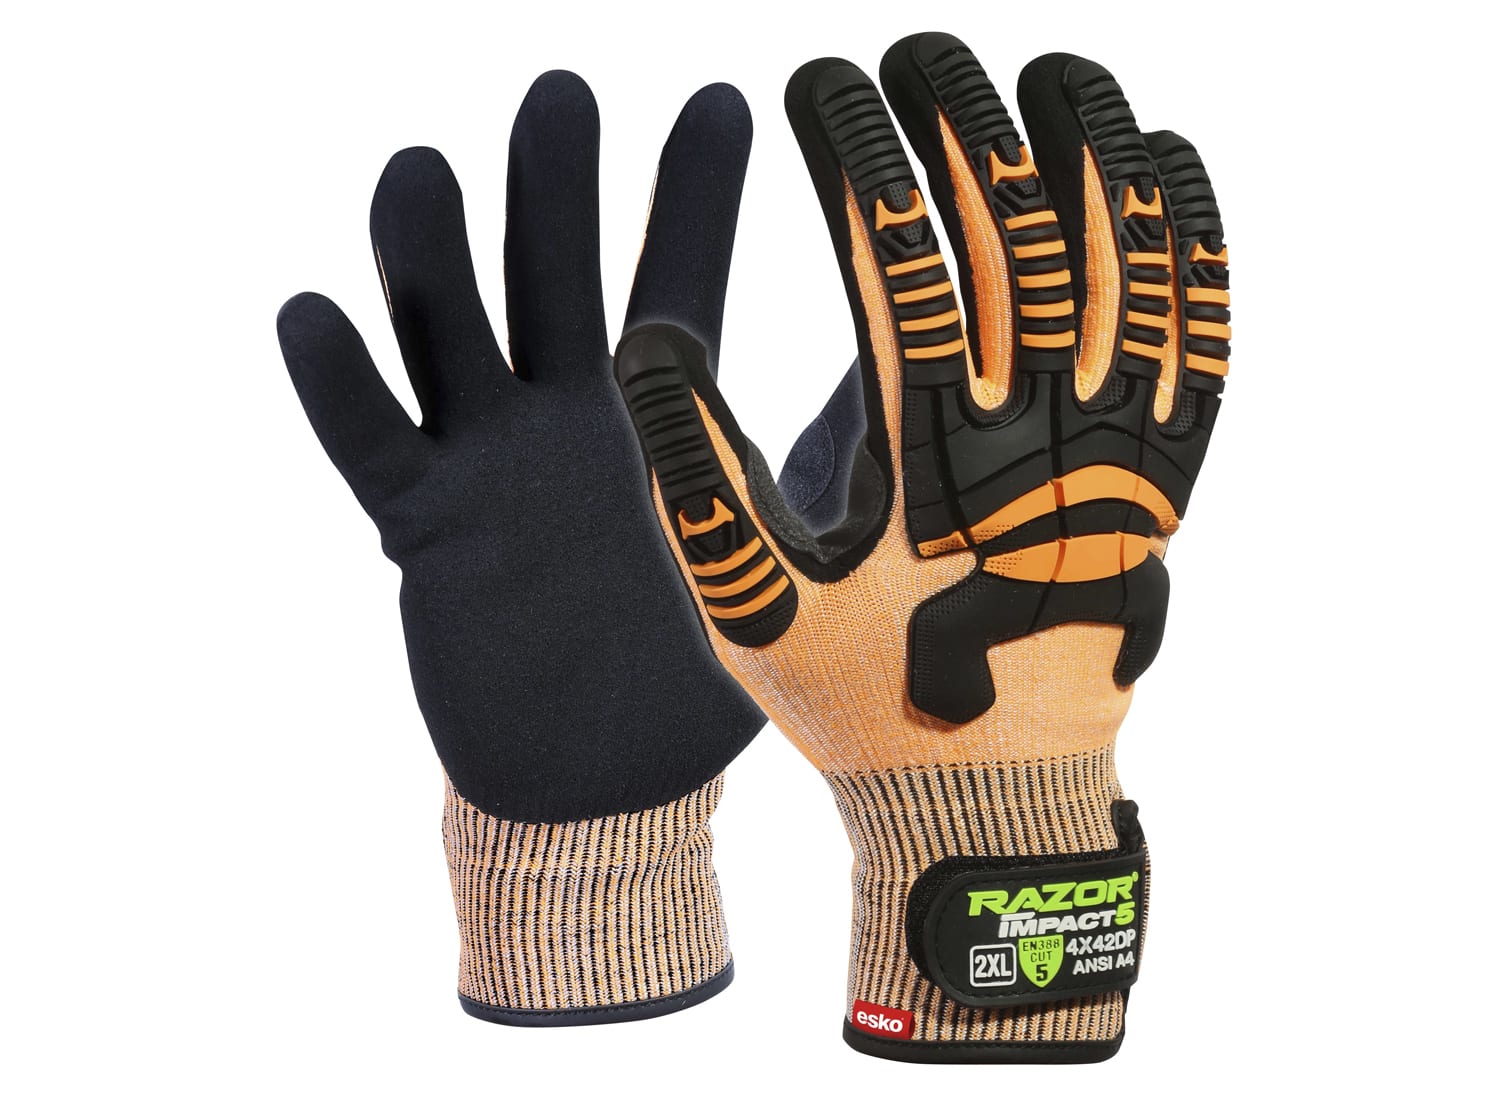 Esko Razor Impact 5 Glove - Orange